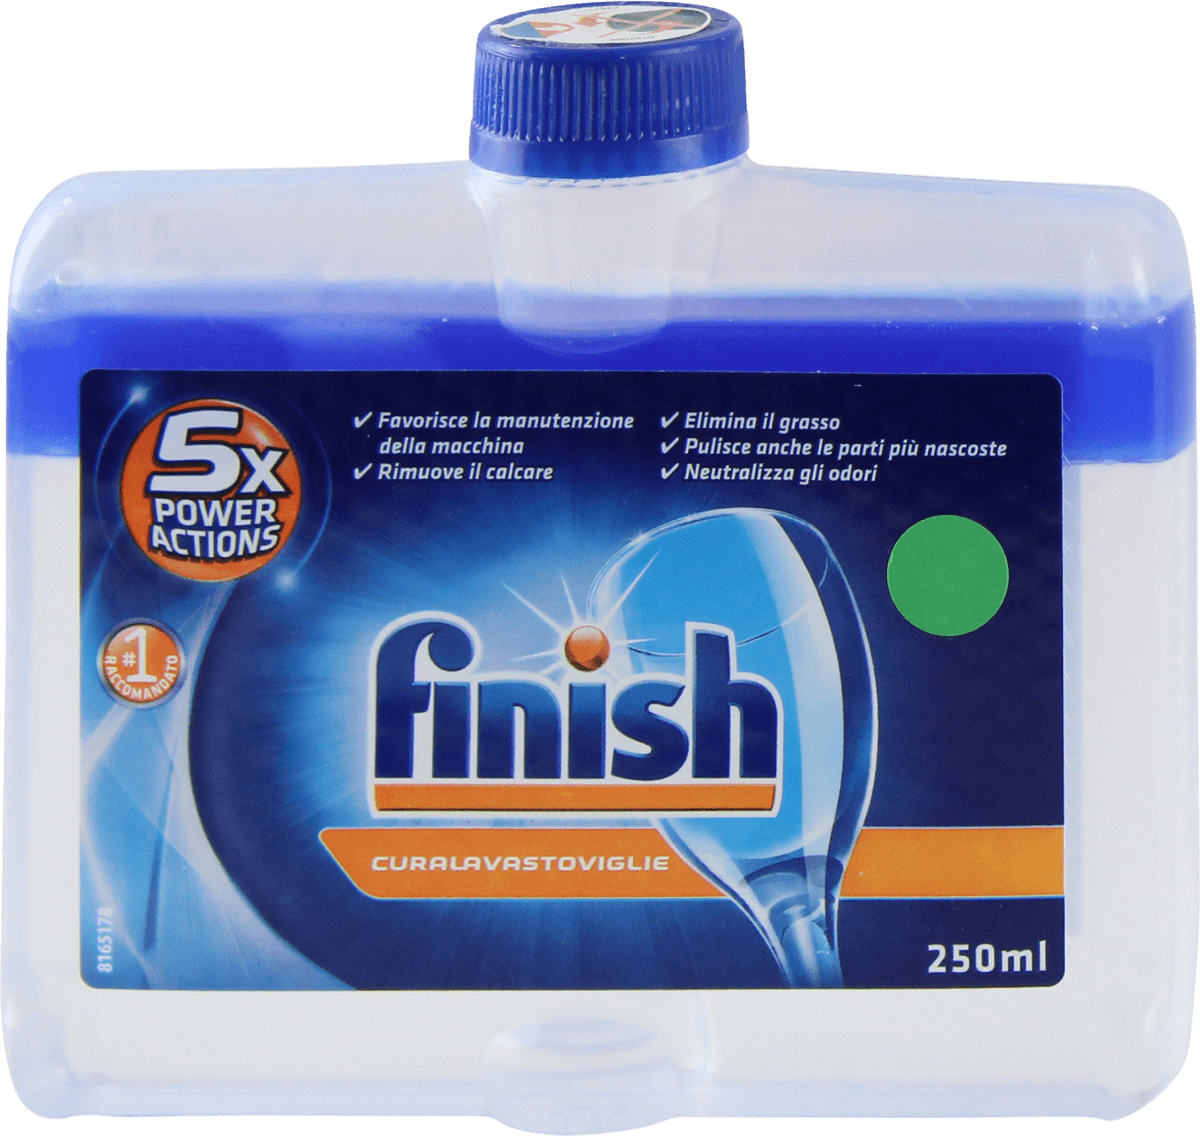 Finish Detergente cura lavastoviglie, 250 ml Acquisti online sempre  convenienti